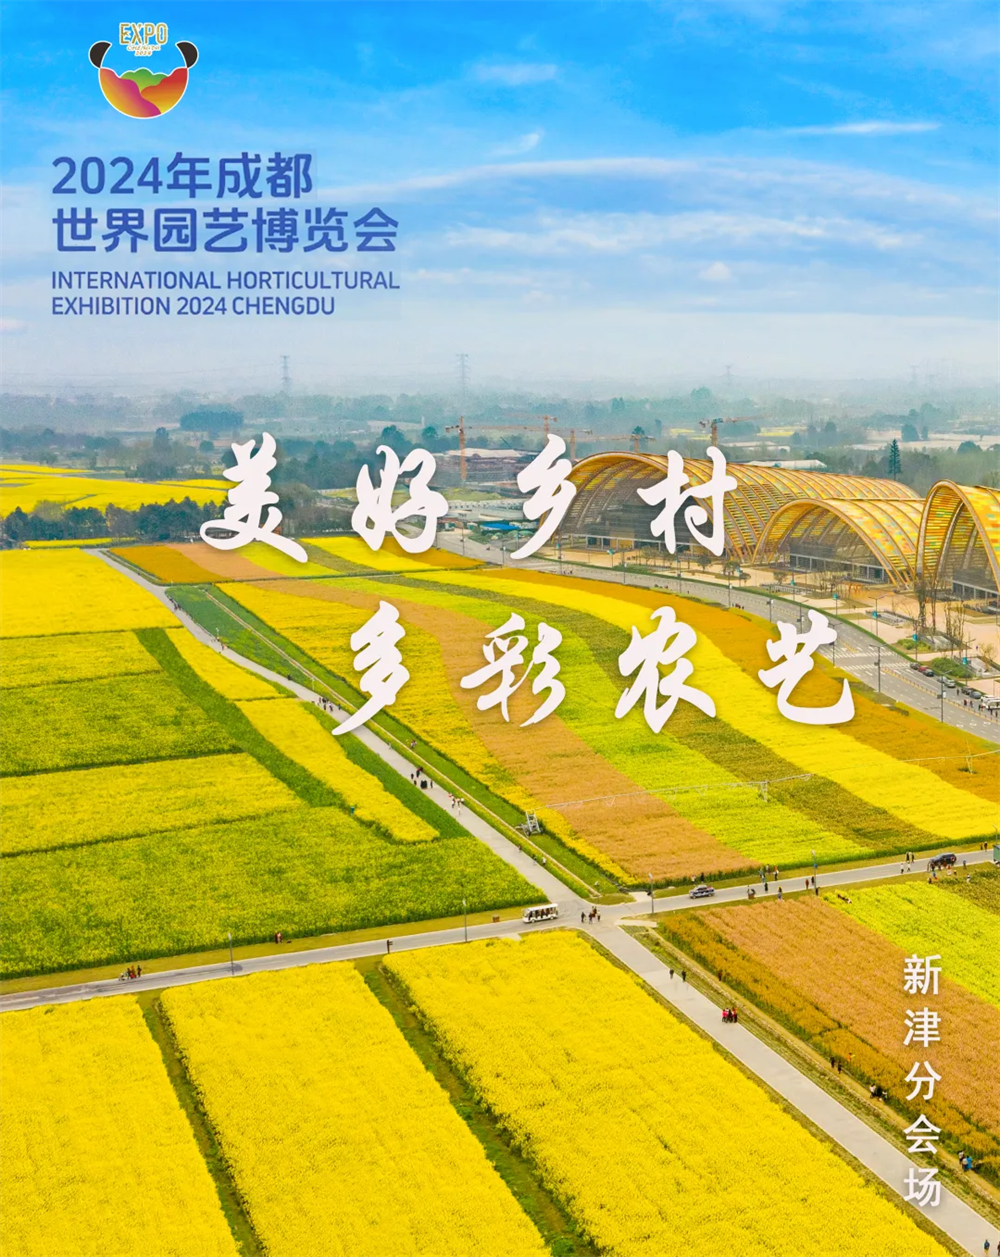 2024成都世园会新津分会场丨饱览山水秀色 徜徉自然生态之美 